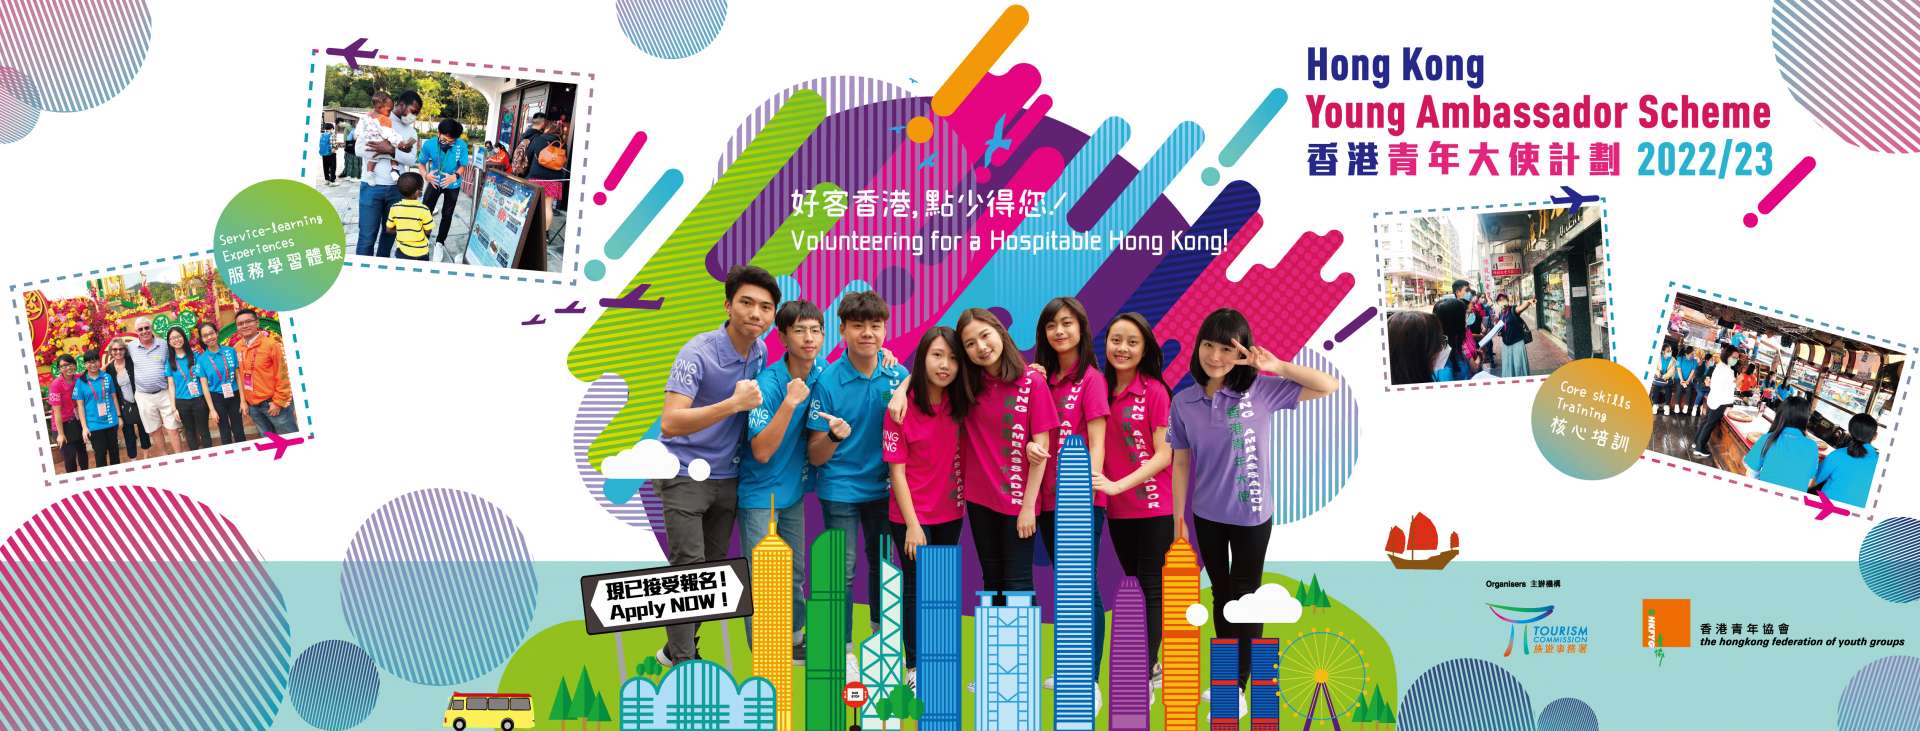 「2022/23香港青年大使計劃」宣傳片